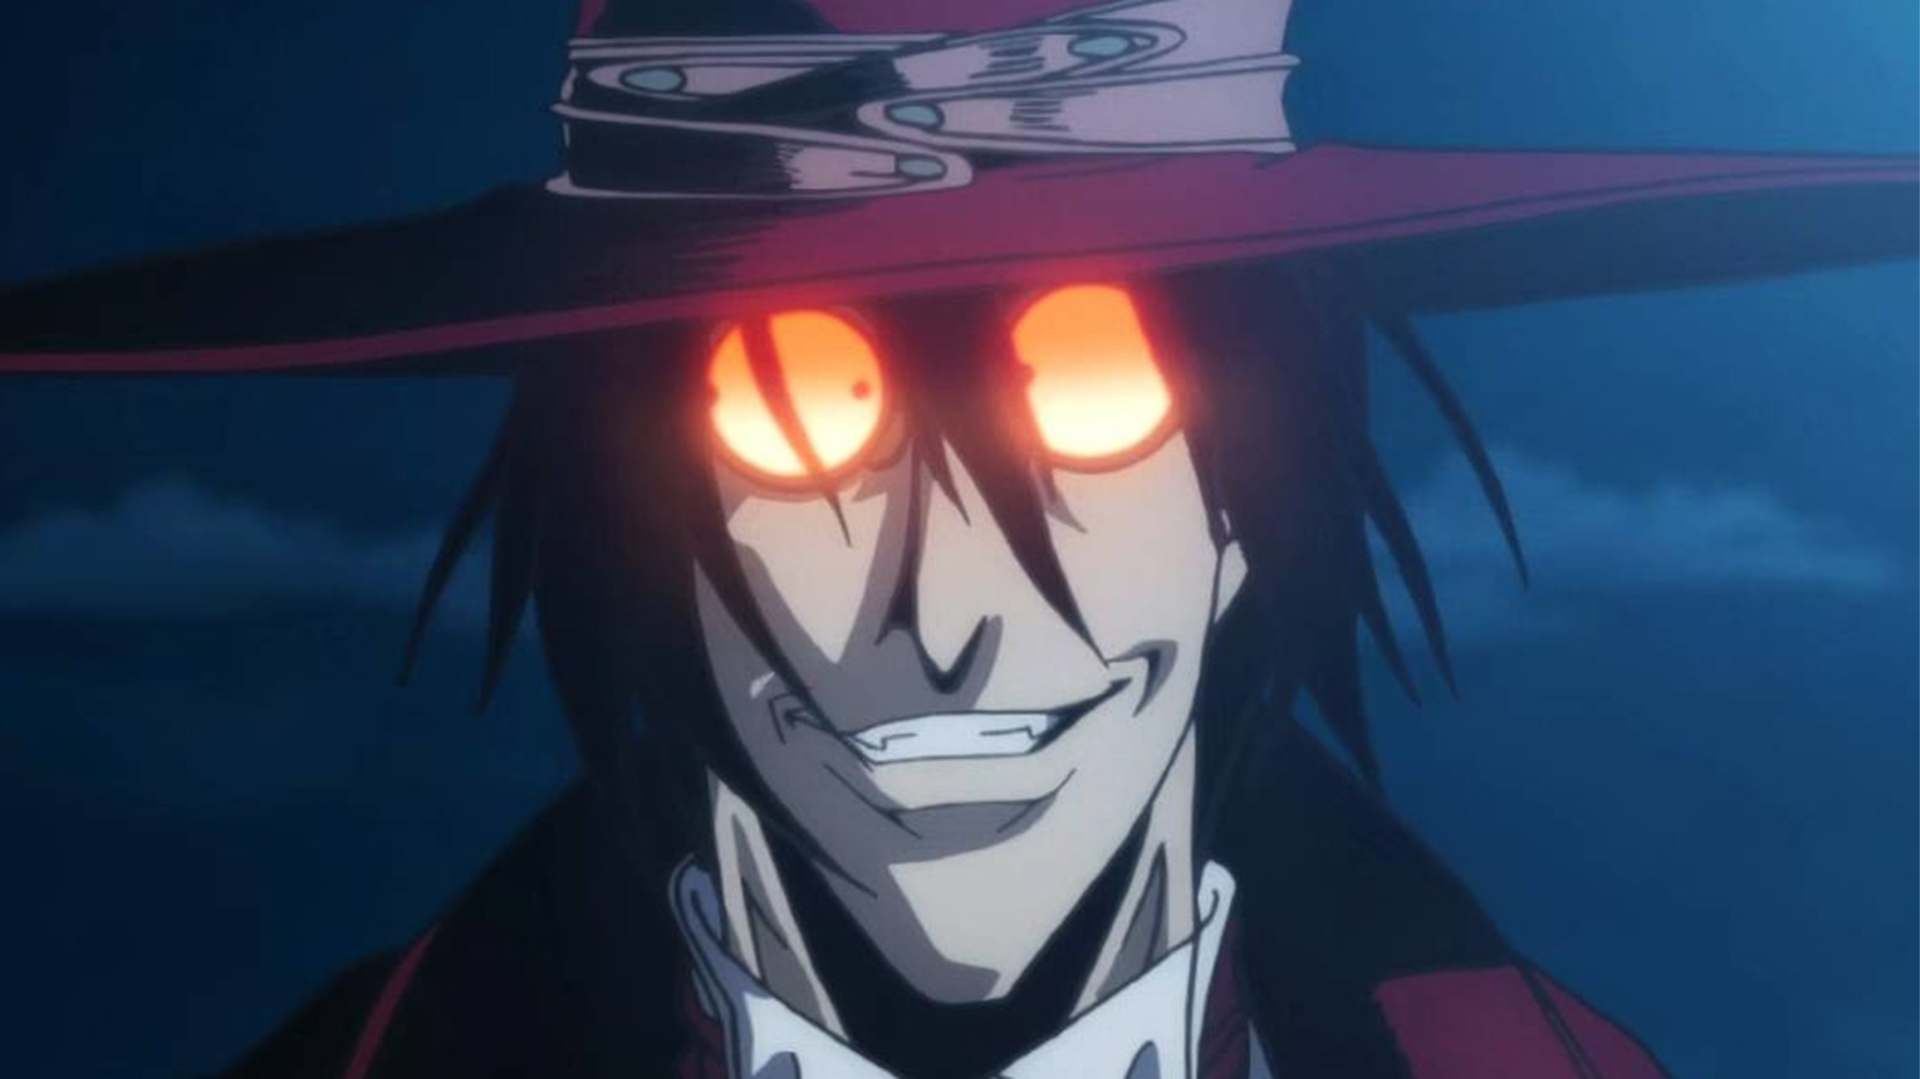 Alucard no anime Hellsing Ultimate dando um sorriso sinistro e seus óculos brilhando na noite.